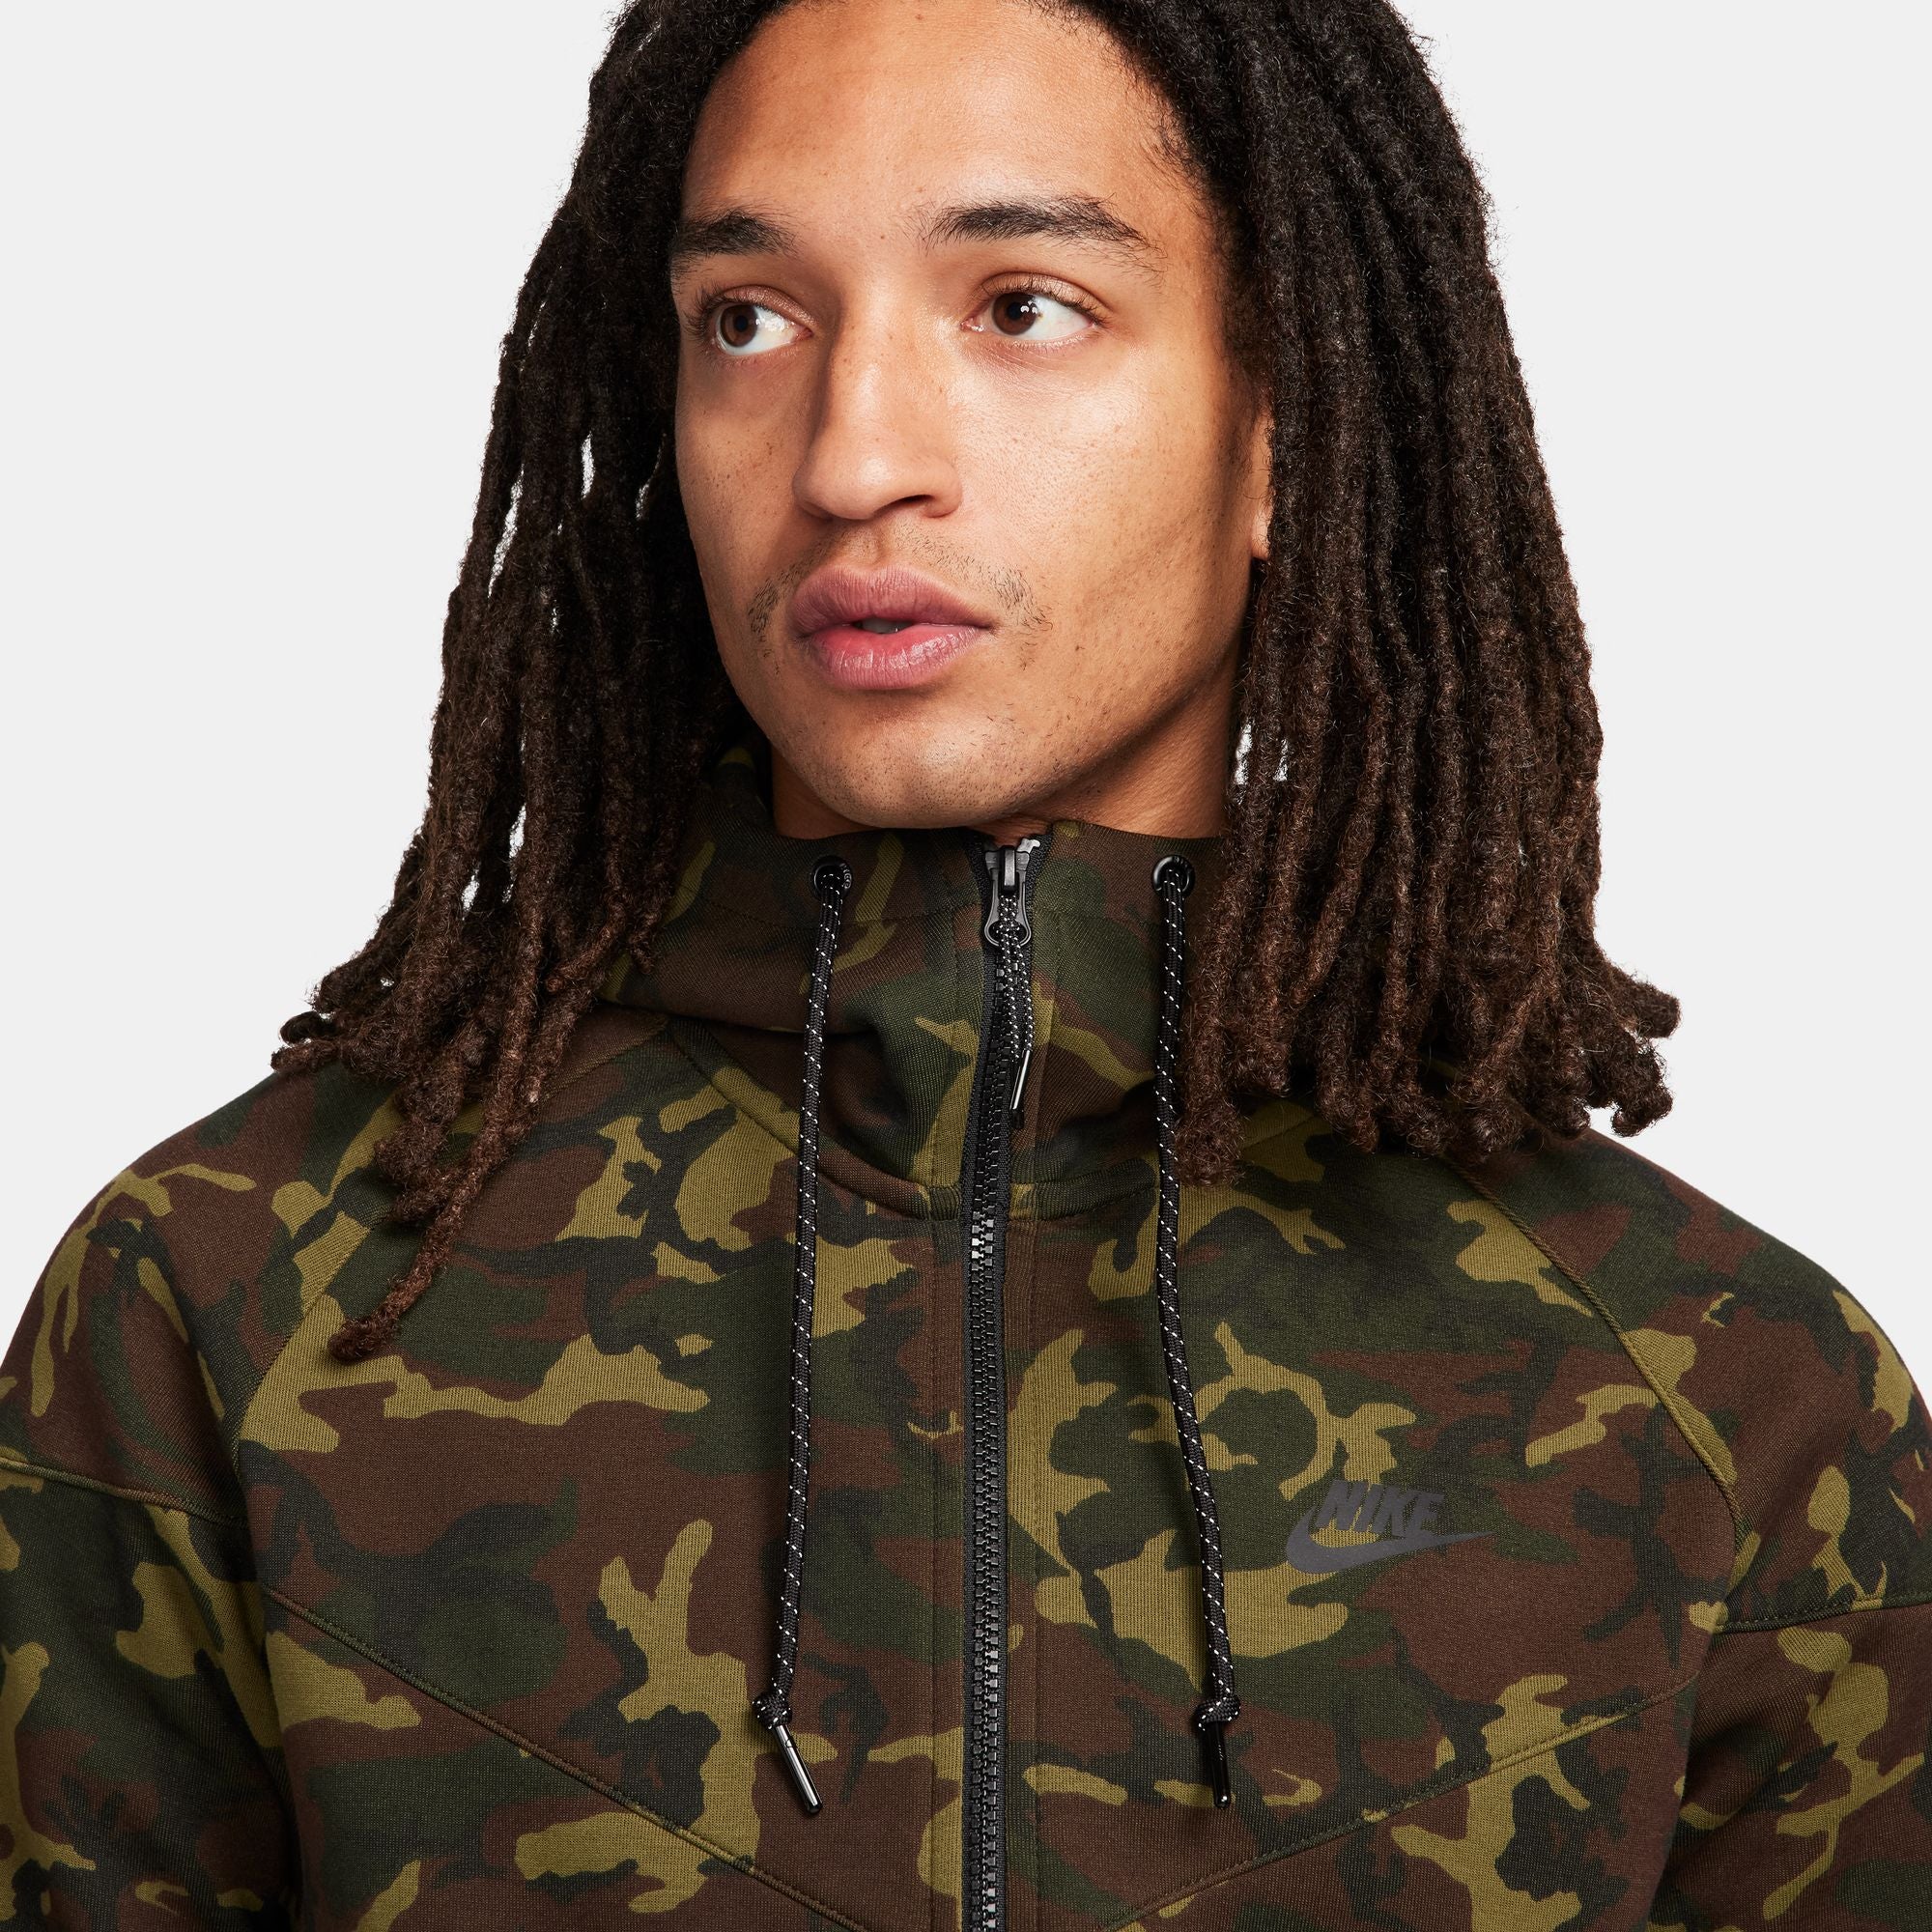 Nike Sportswear Tech Fleece OG Windrunner Green Camo Jacket